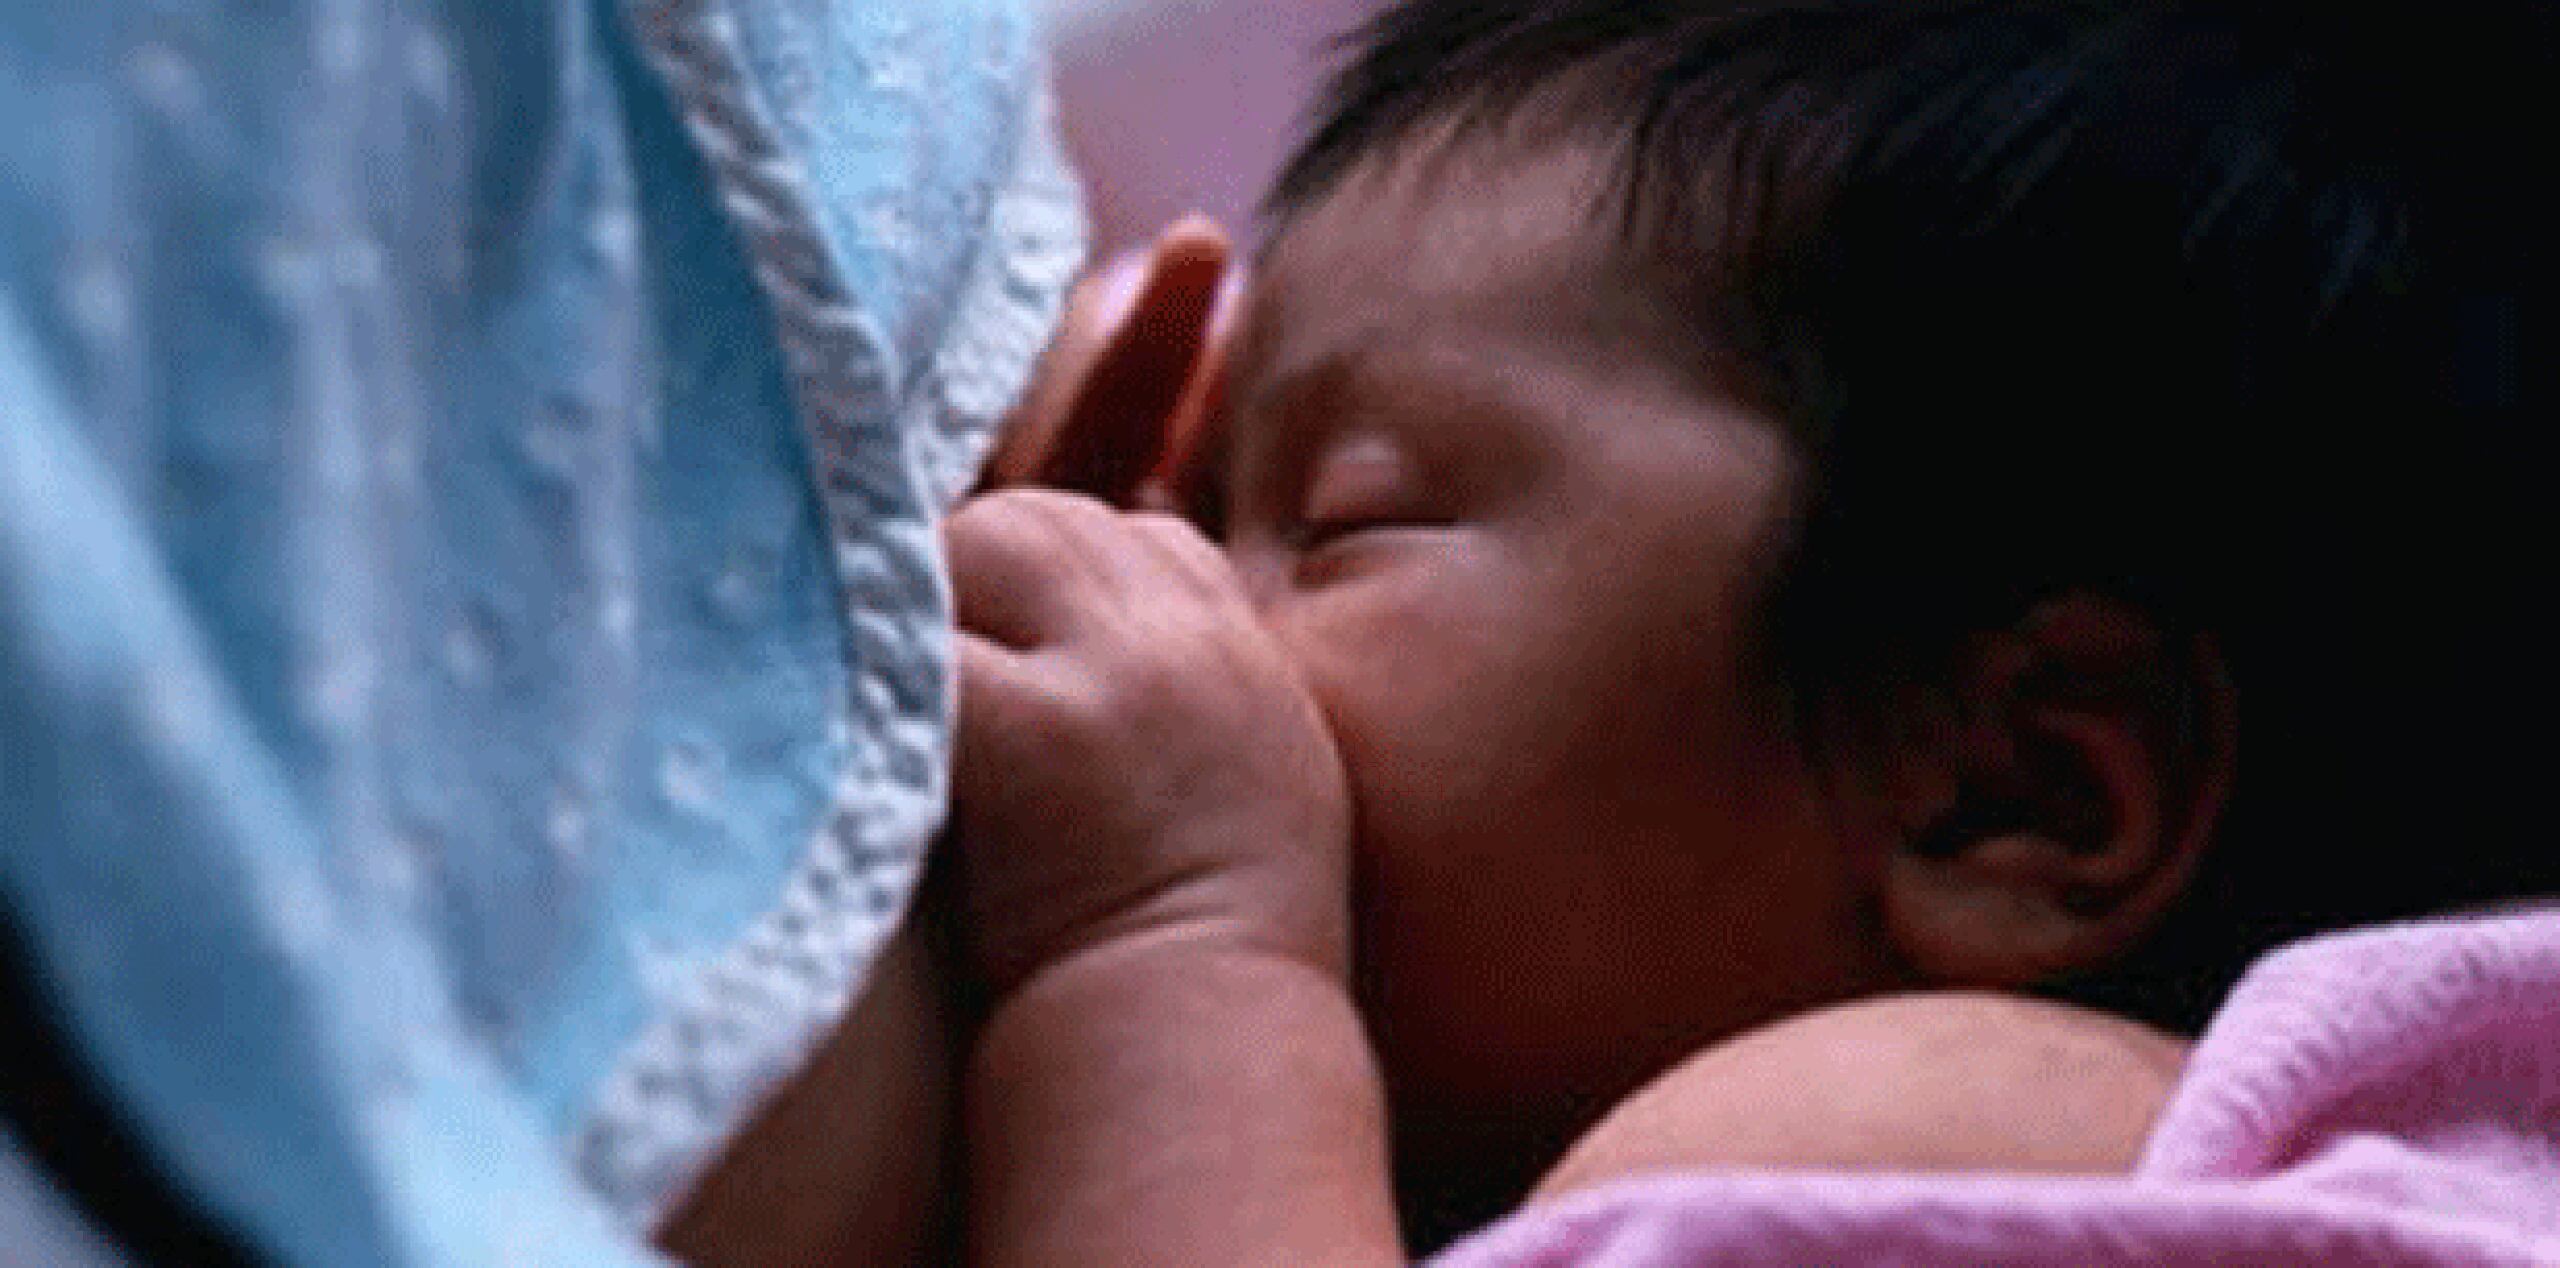 El dilema gira en torno a qué procesos producen una leche más segura para los bebés prematuros en unidades neonatales de cuidados intensivos, que necesitan la leche si una madre tiene problemas para producirla y o si el niño tiene problemas para lactar. (Archivo)